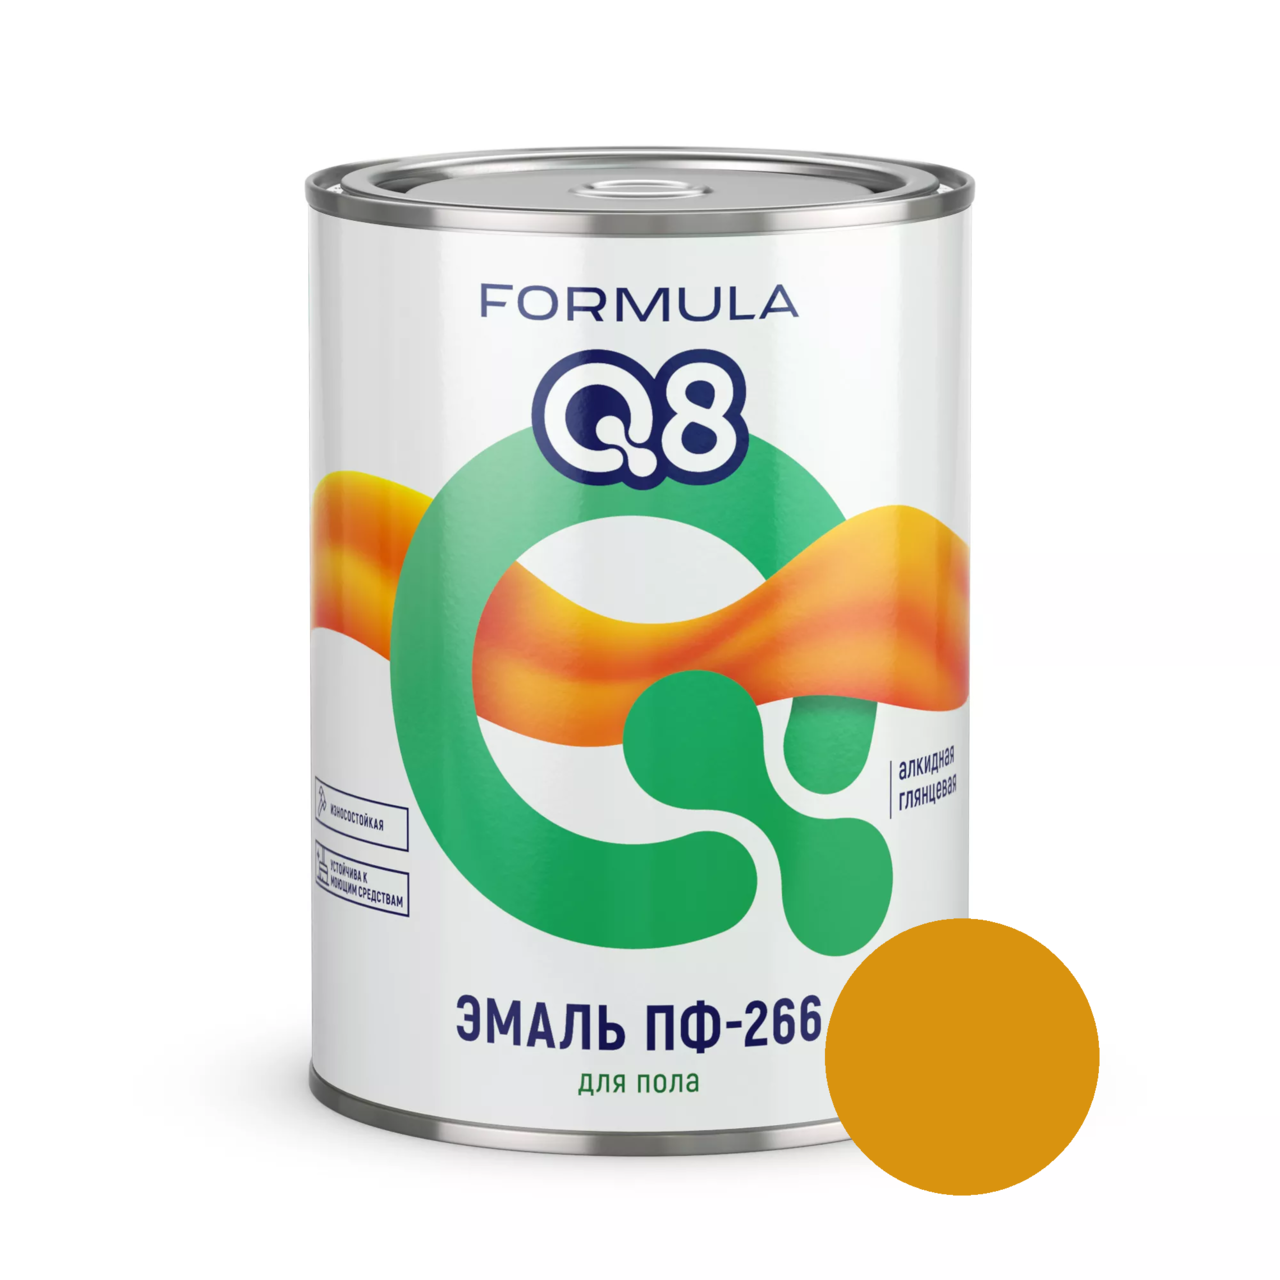 Эмаль ПФ-266 Formula Q8 светлый орех 1,9 кг